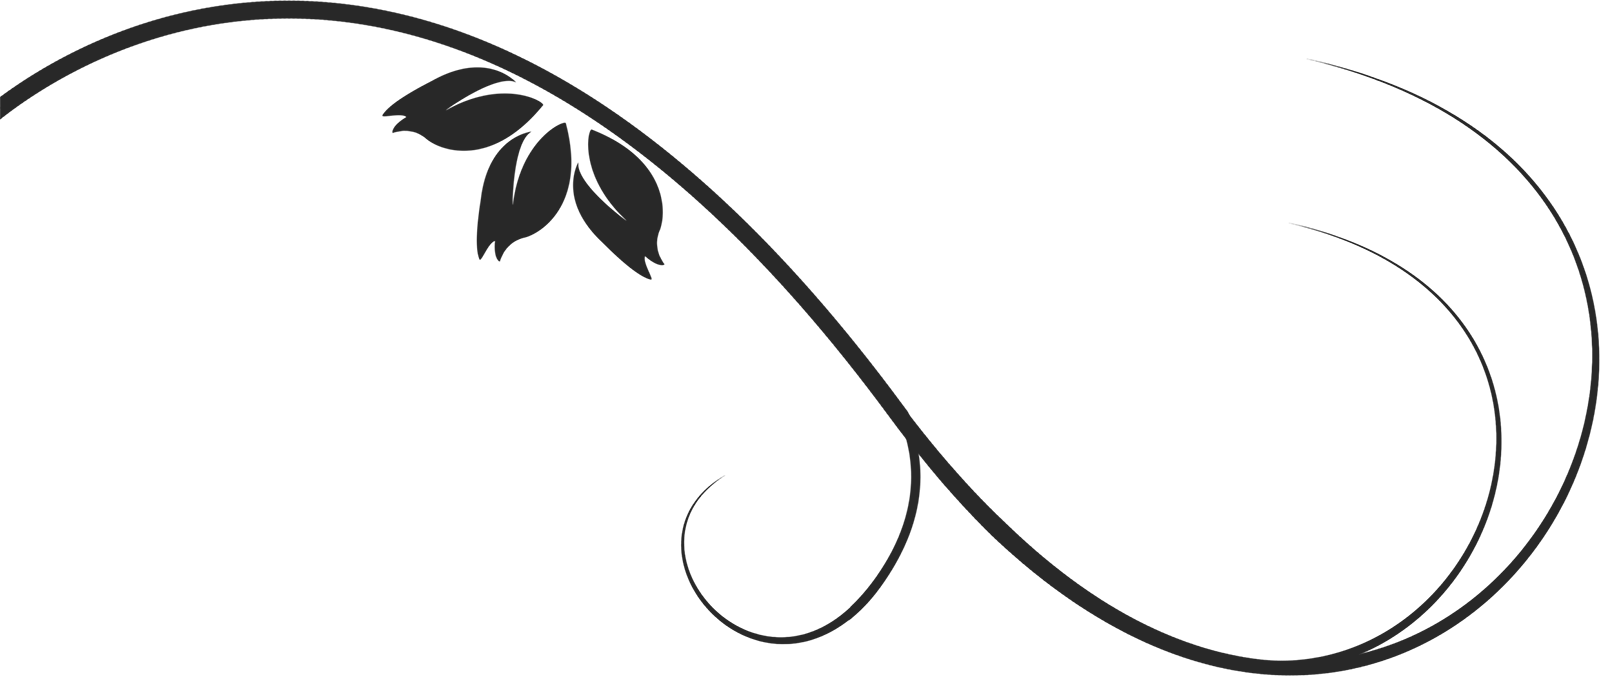 葉っぱ 草木のイラスト フリー素材 フレーム枠no 109 白黒 茎葉 カーブ